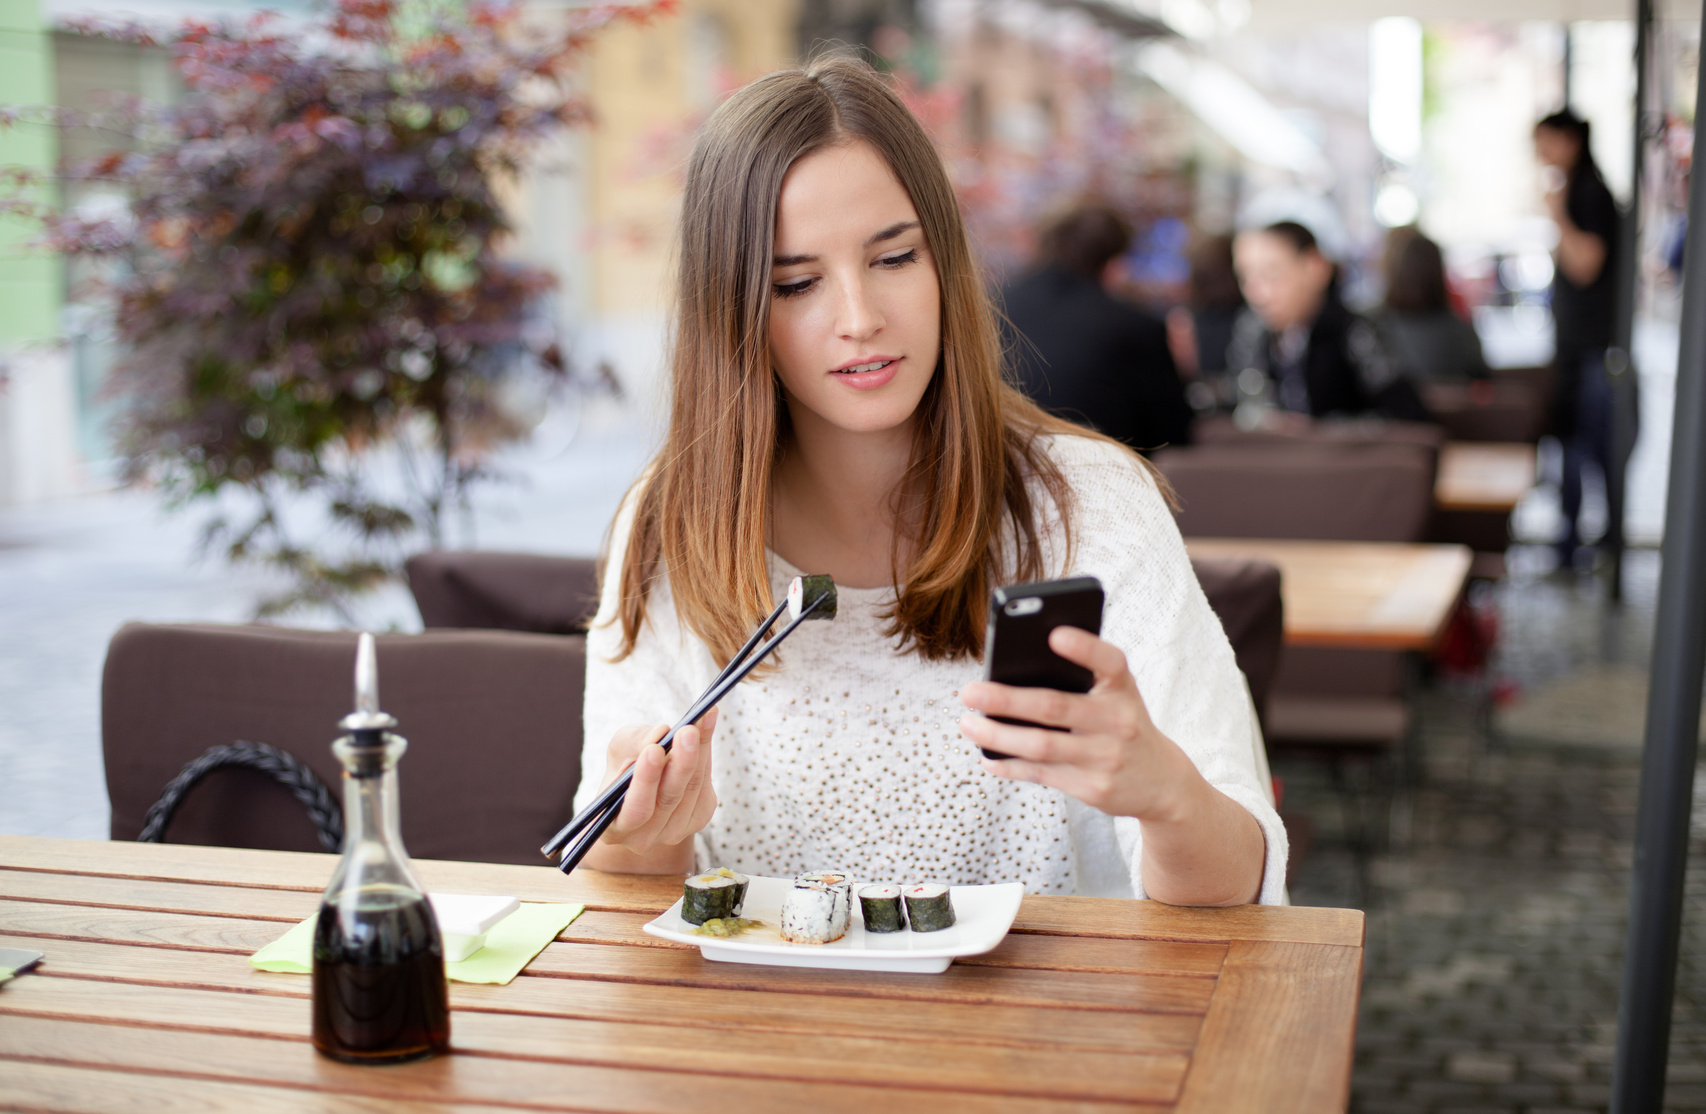 Бывшая читает смс. Девушка в кафе. Девушка со смартфоном. Девушка сидит в кафе. Девушка в кафе с телефоном.